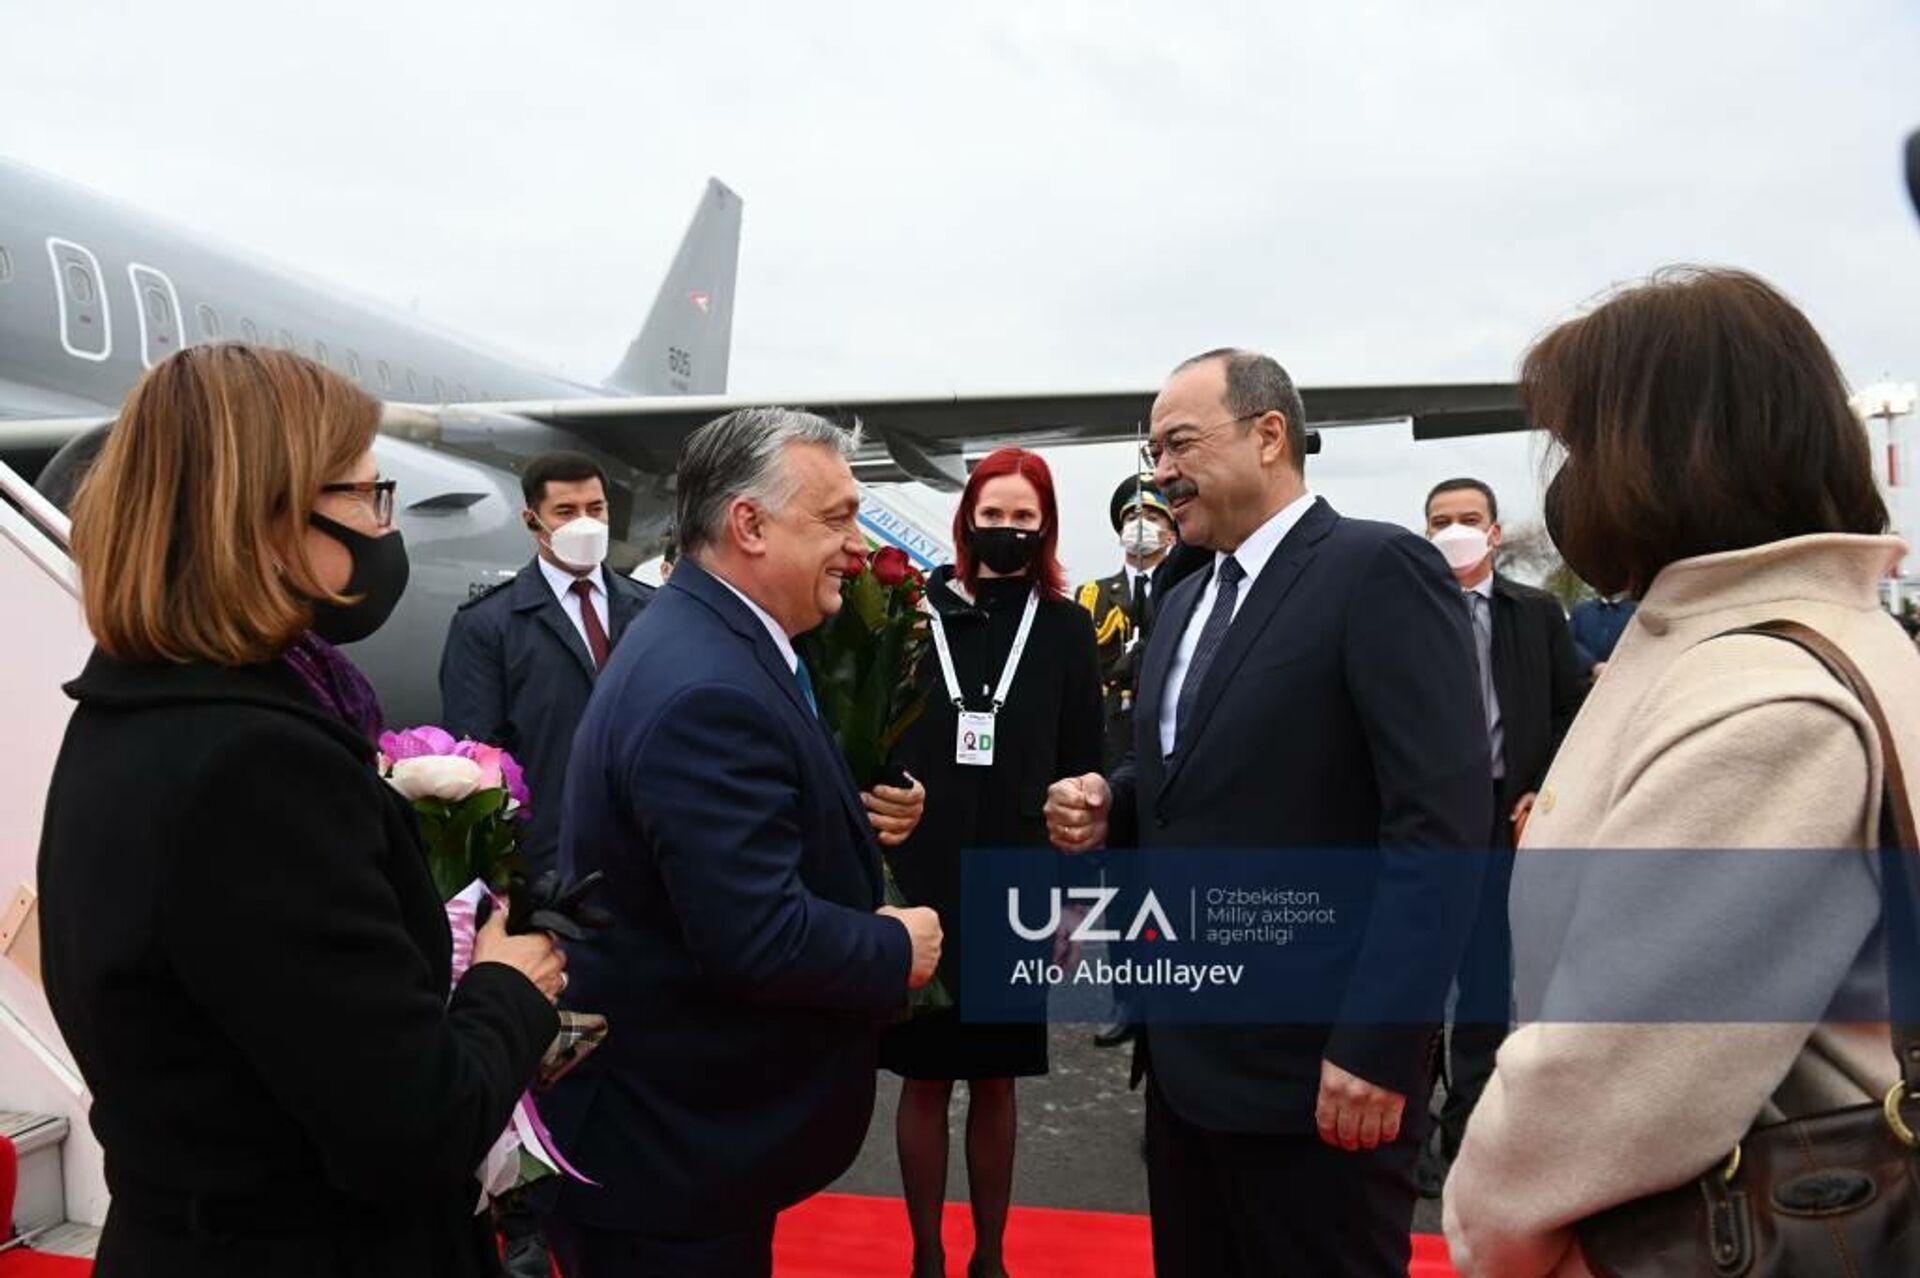 Премьер-министр Венгрии Виктор Орбан прибыл в Узбекистан - Sputnik Ўзбекистон, 1920, 29.03.2021